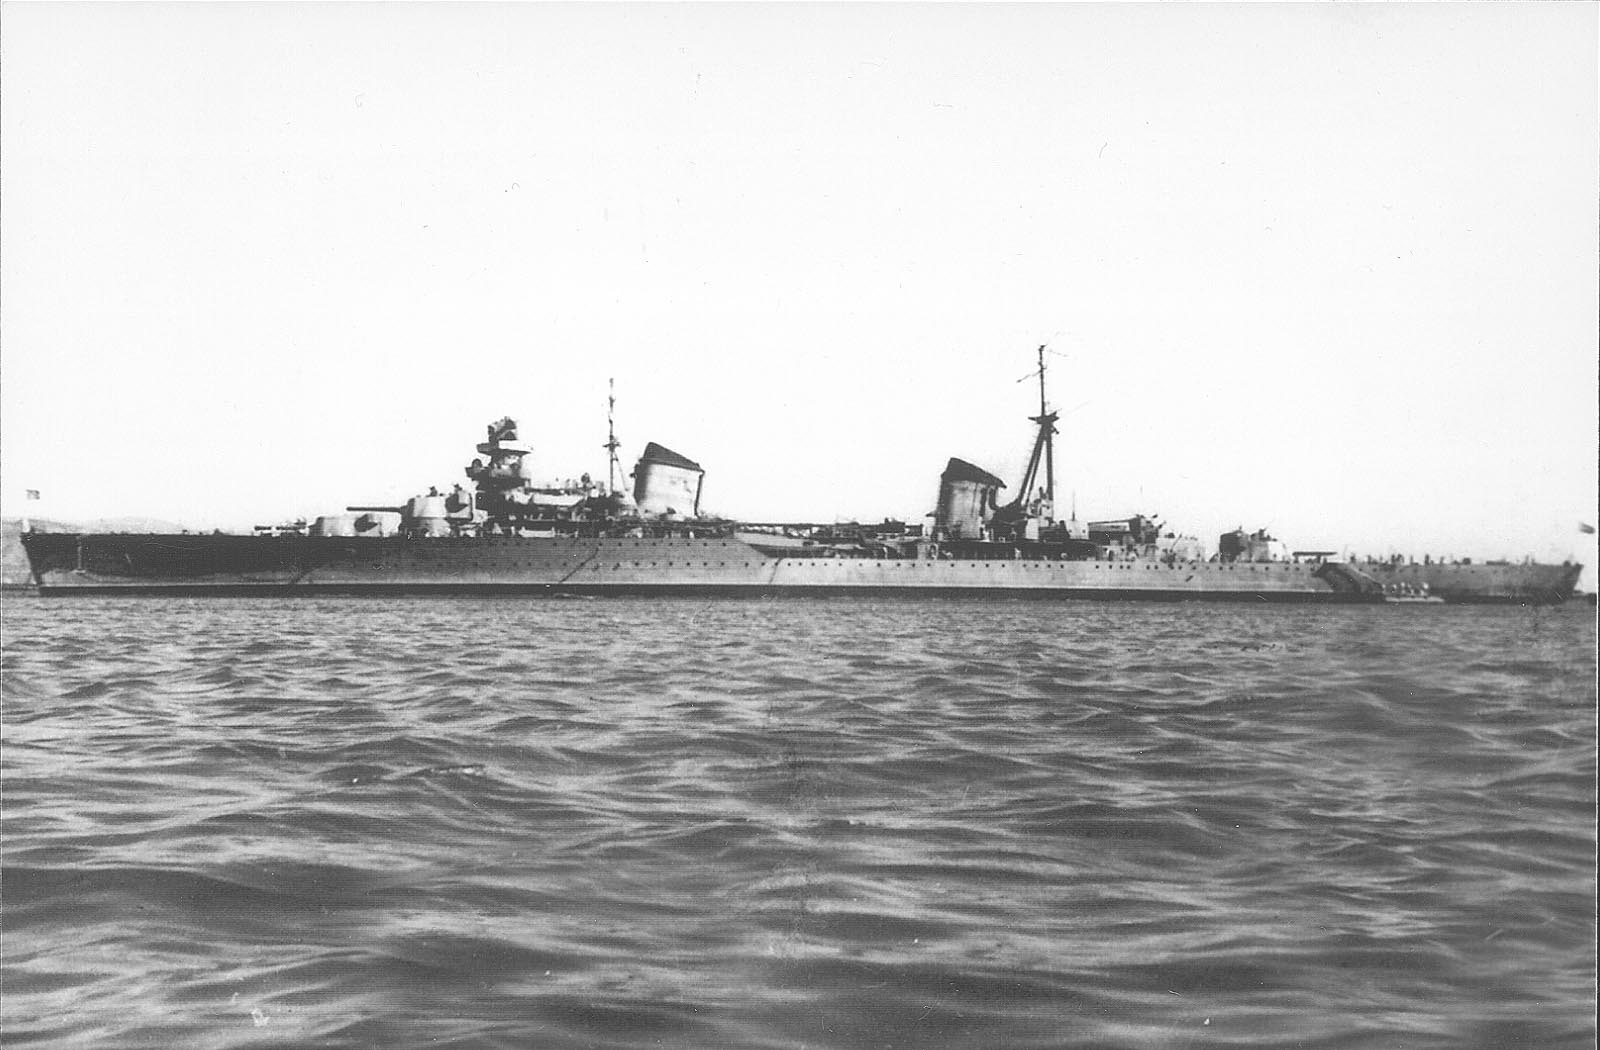 Light cruiser Molotov, date unknown